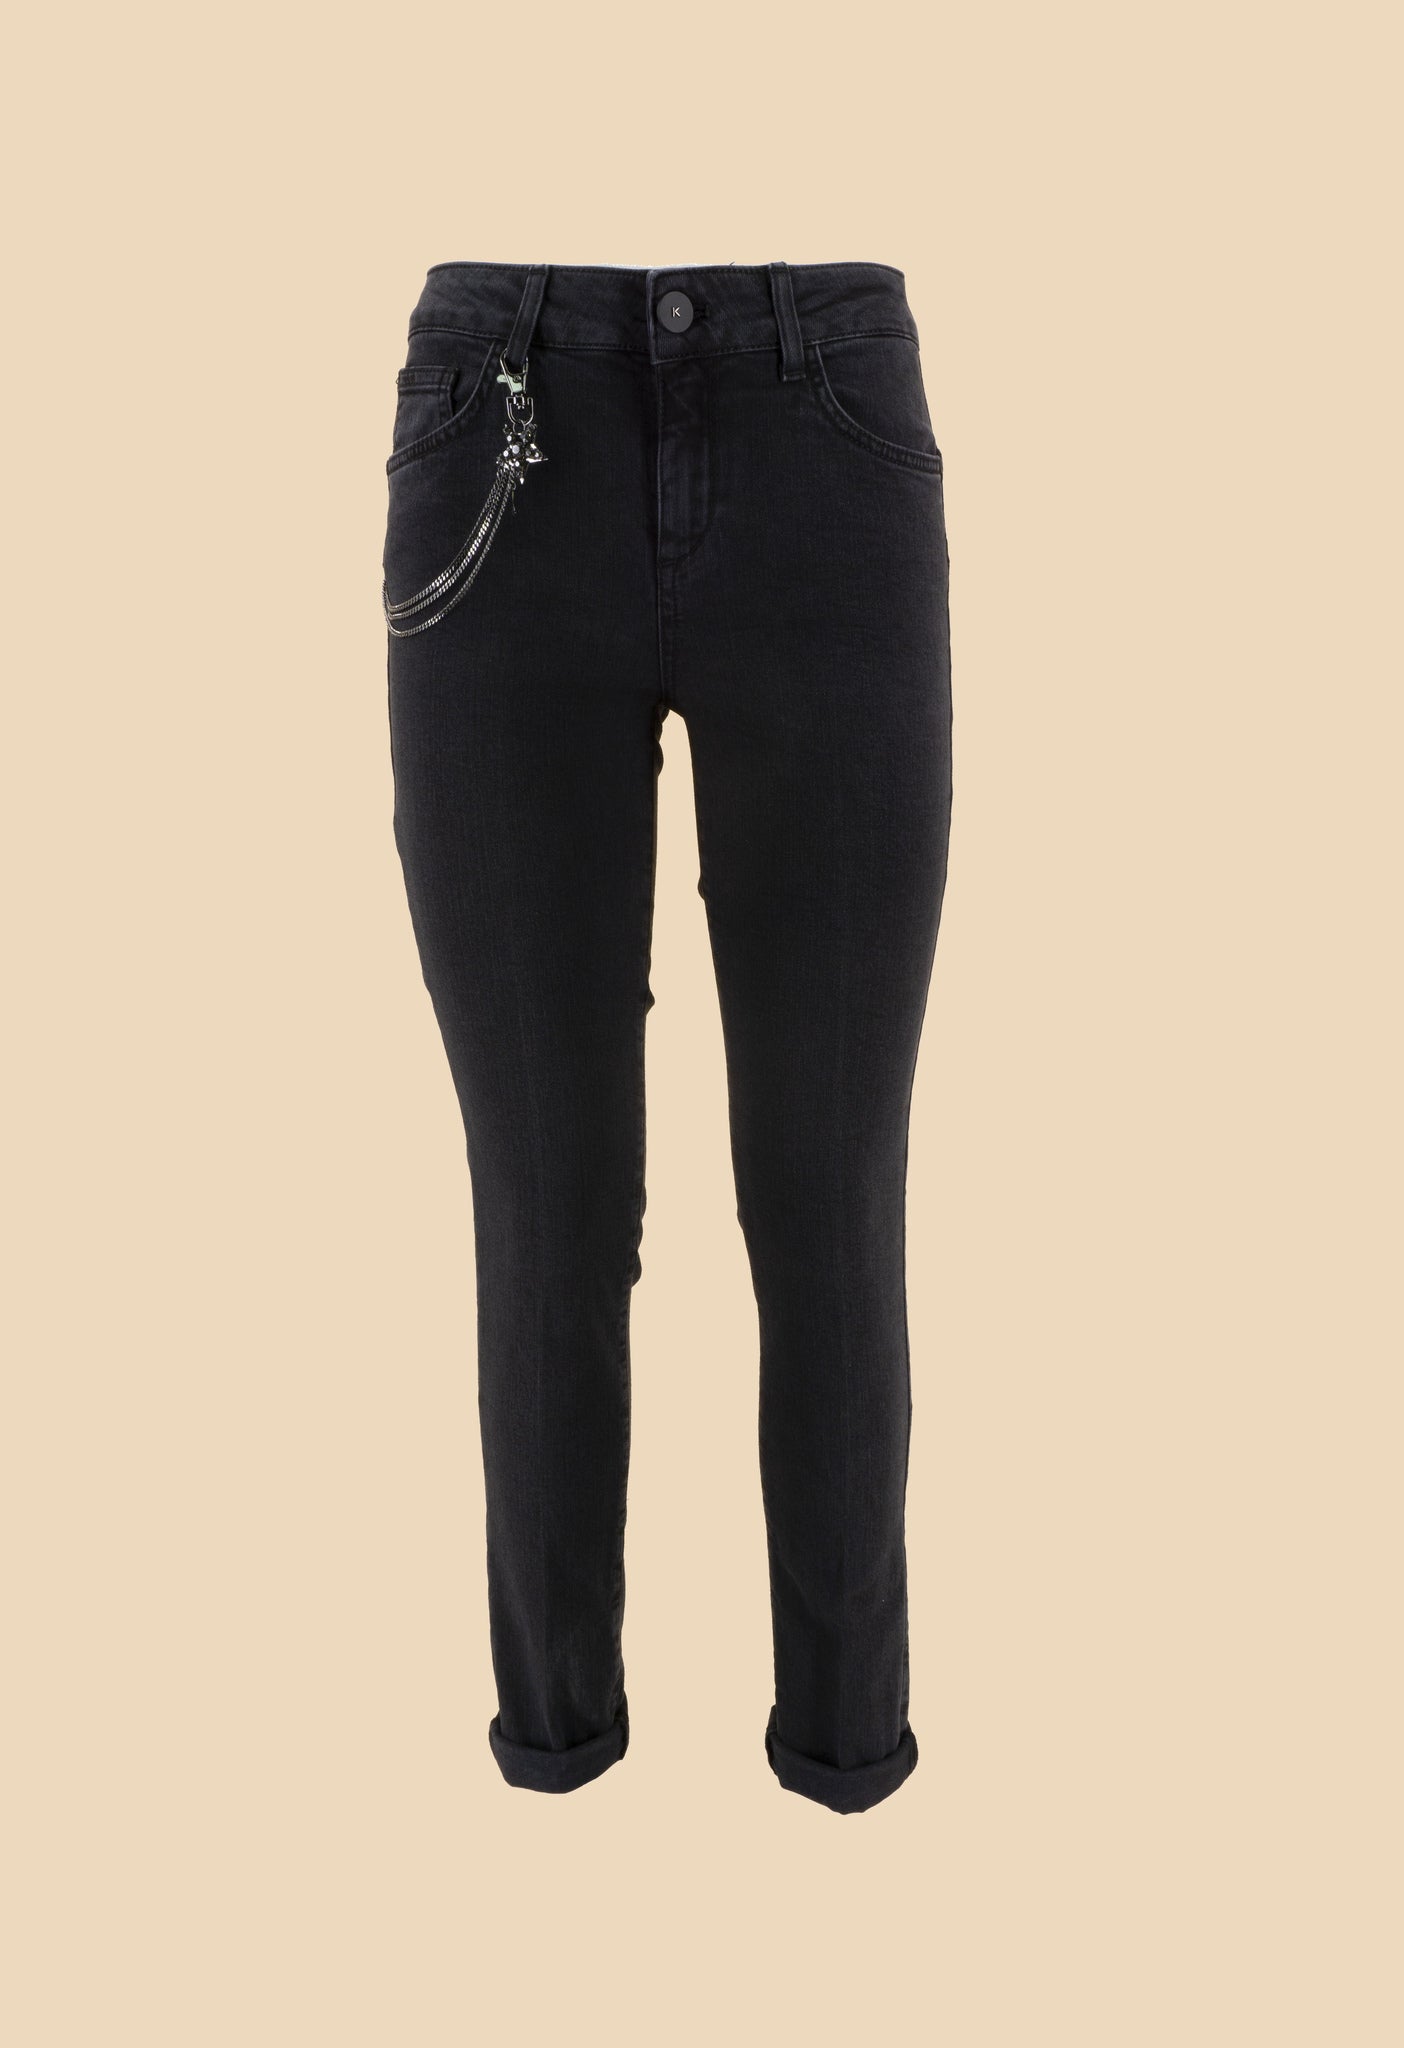 Jeans Nero con Applicazioni / Nero - Ideal Moda